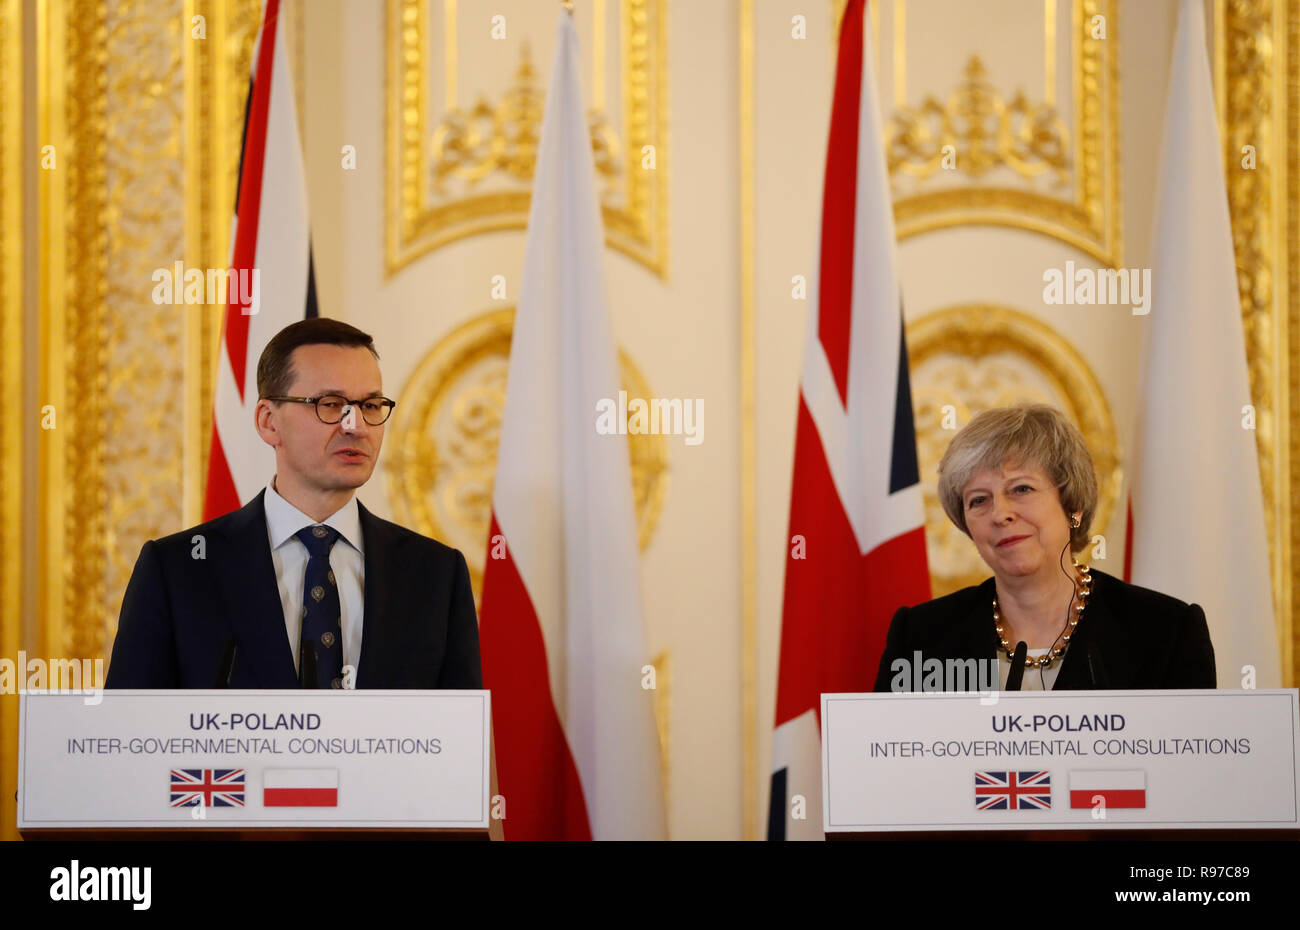 El Primer Ministro Teresa Mayo y el Primer Ministro polaco Mateusz Morawiecki durante una conferencia de prensa tras la UK-Polonia consultas intergubernamentales en Lancaster House, Londres. Foto de stock